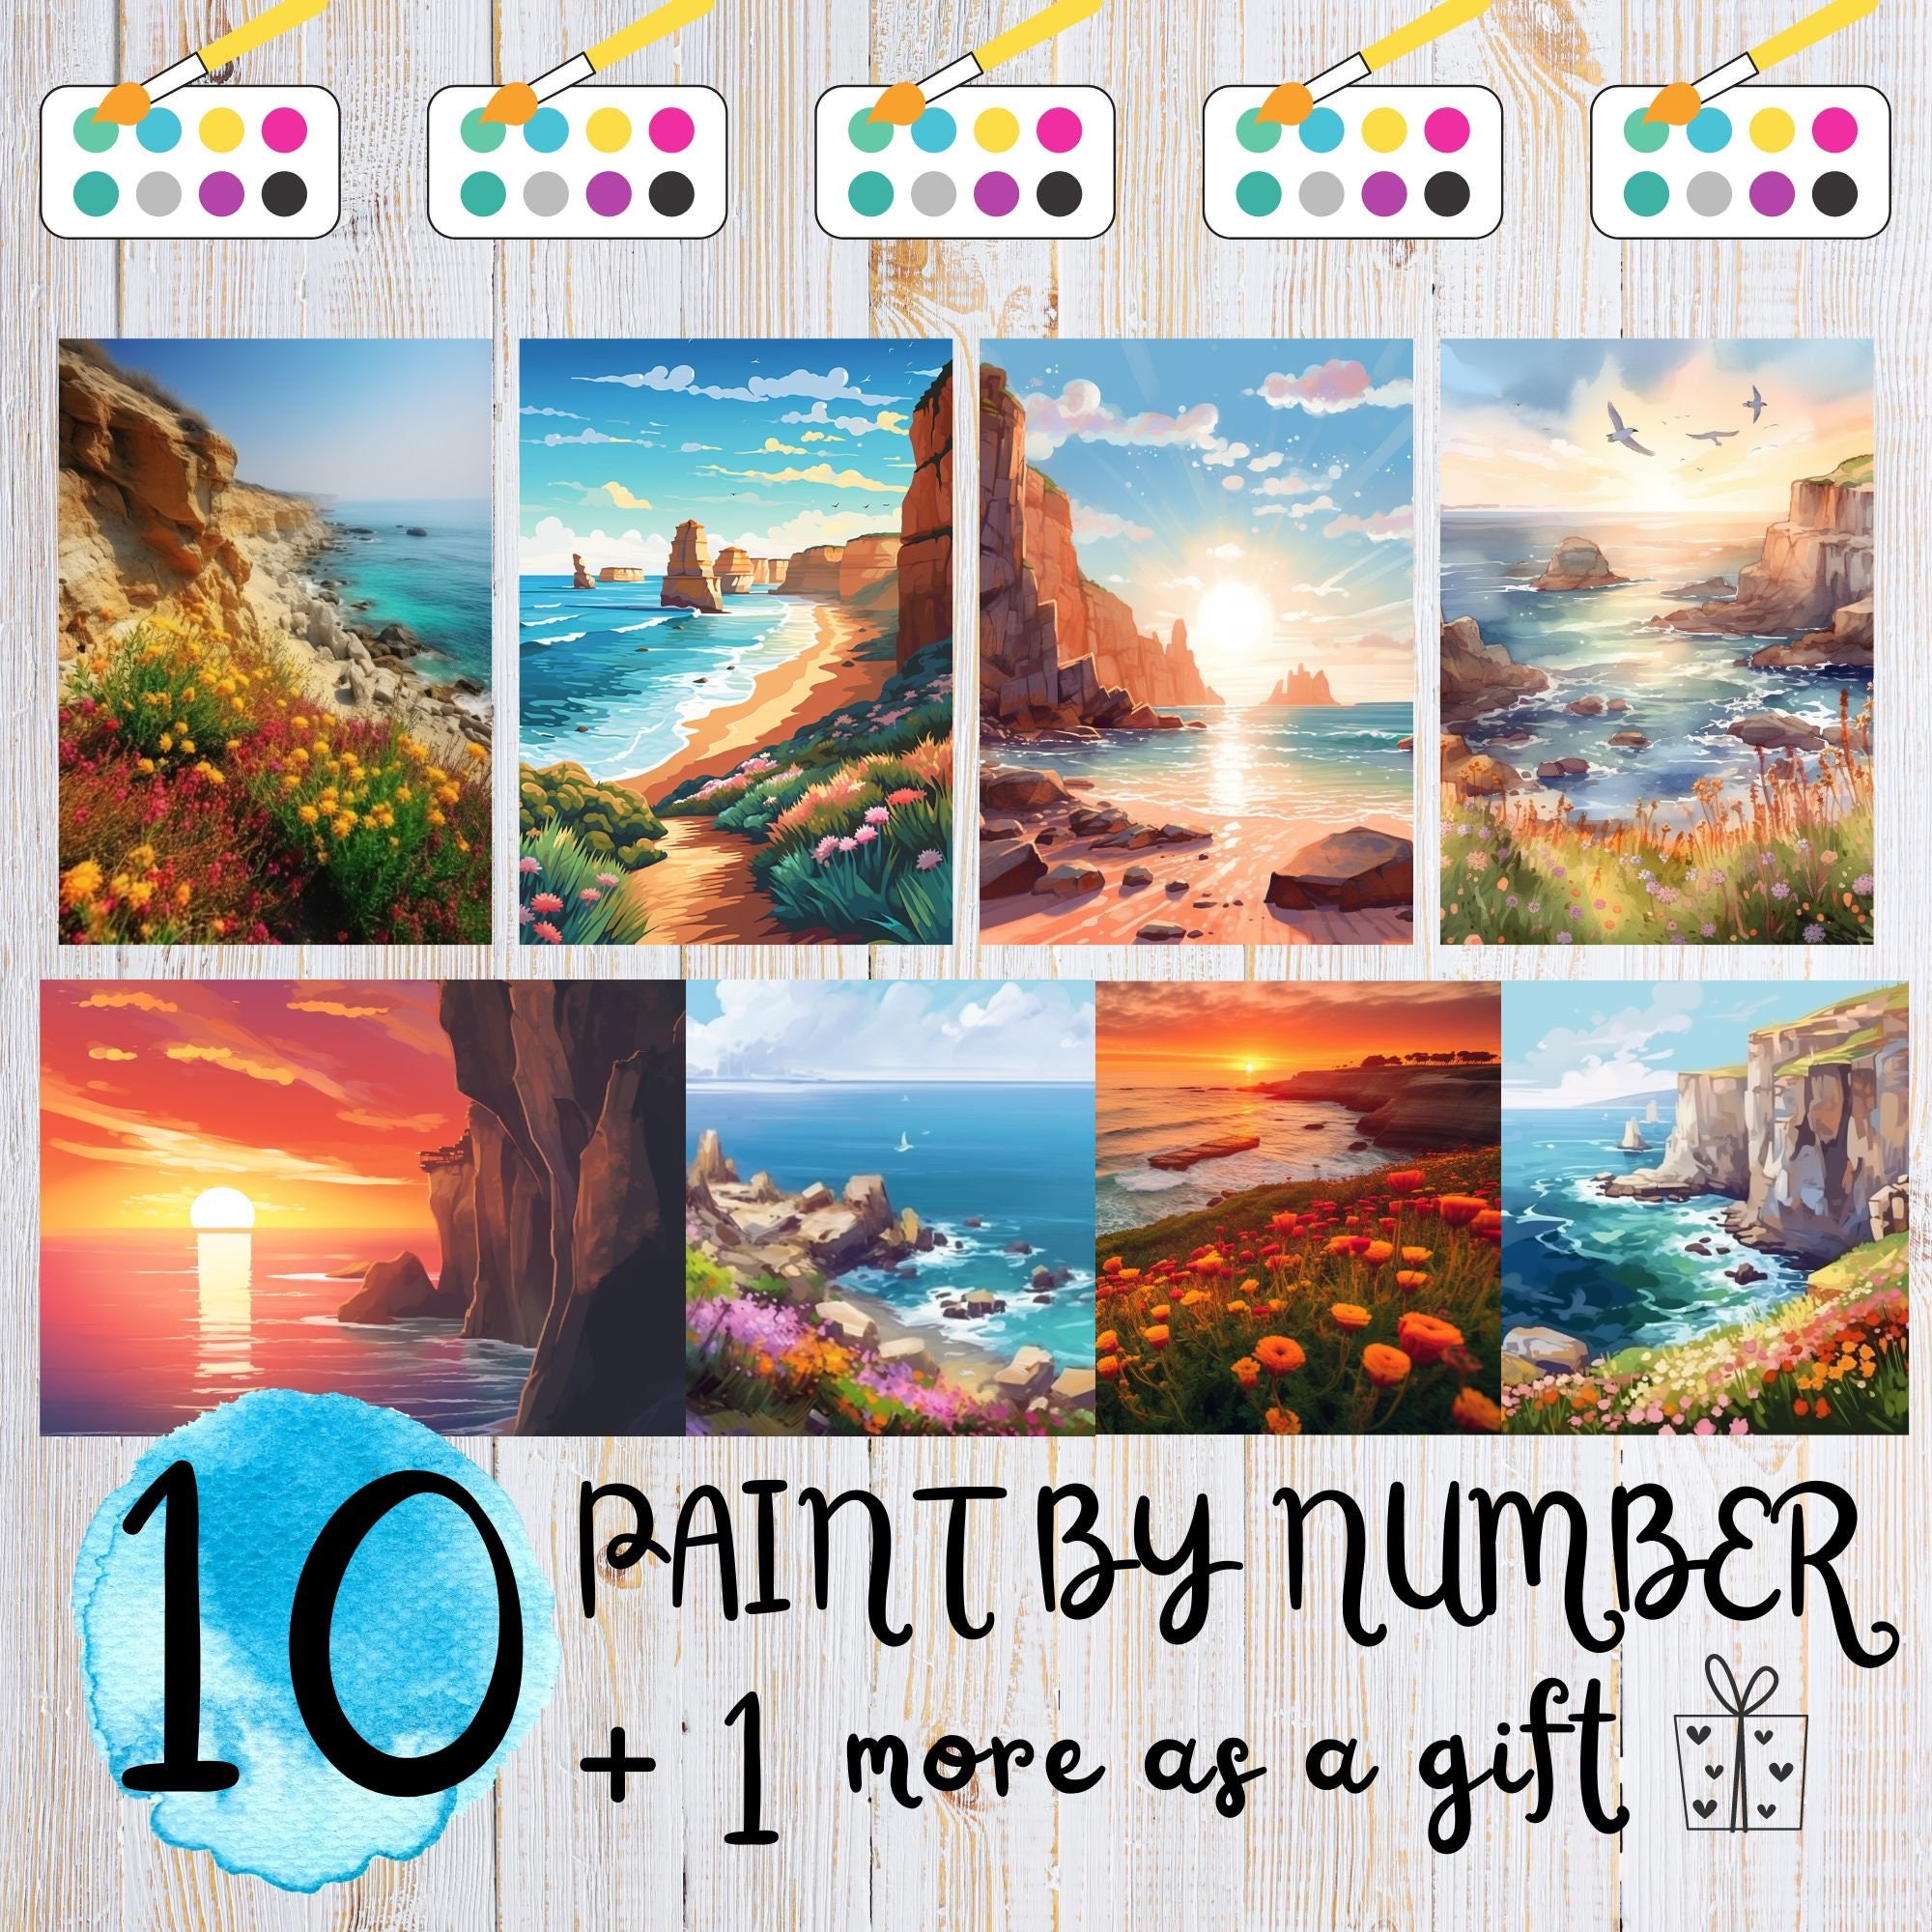  Paint by Numbers DIY Beautiful Atlantic Ocean Summer